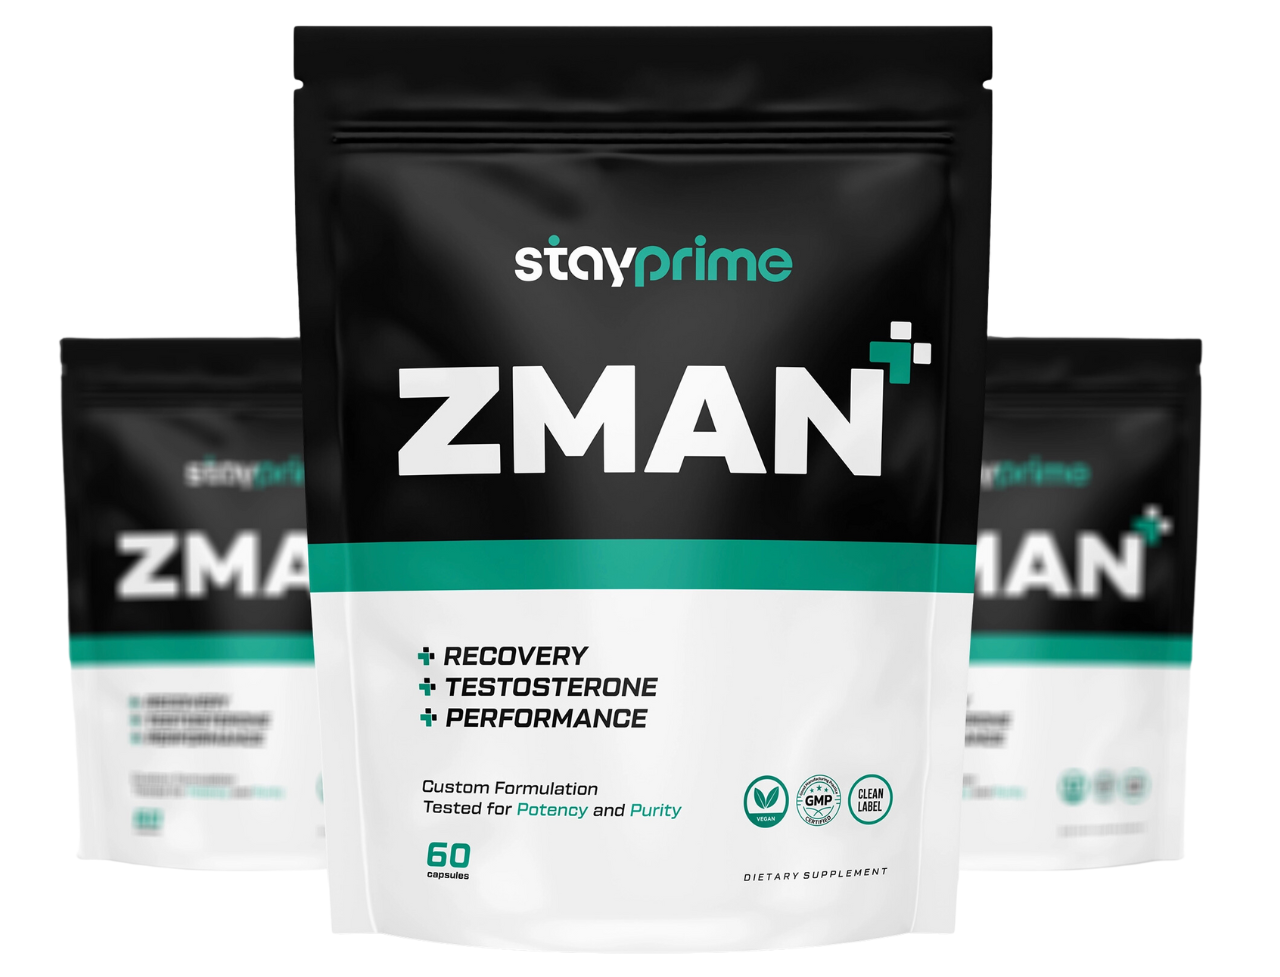 zman, stayprime, mens supplement for men, ZMA